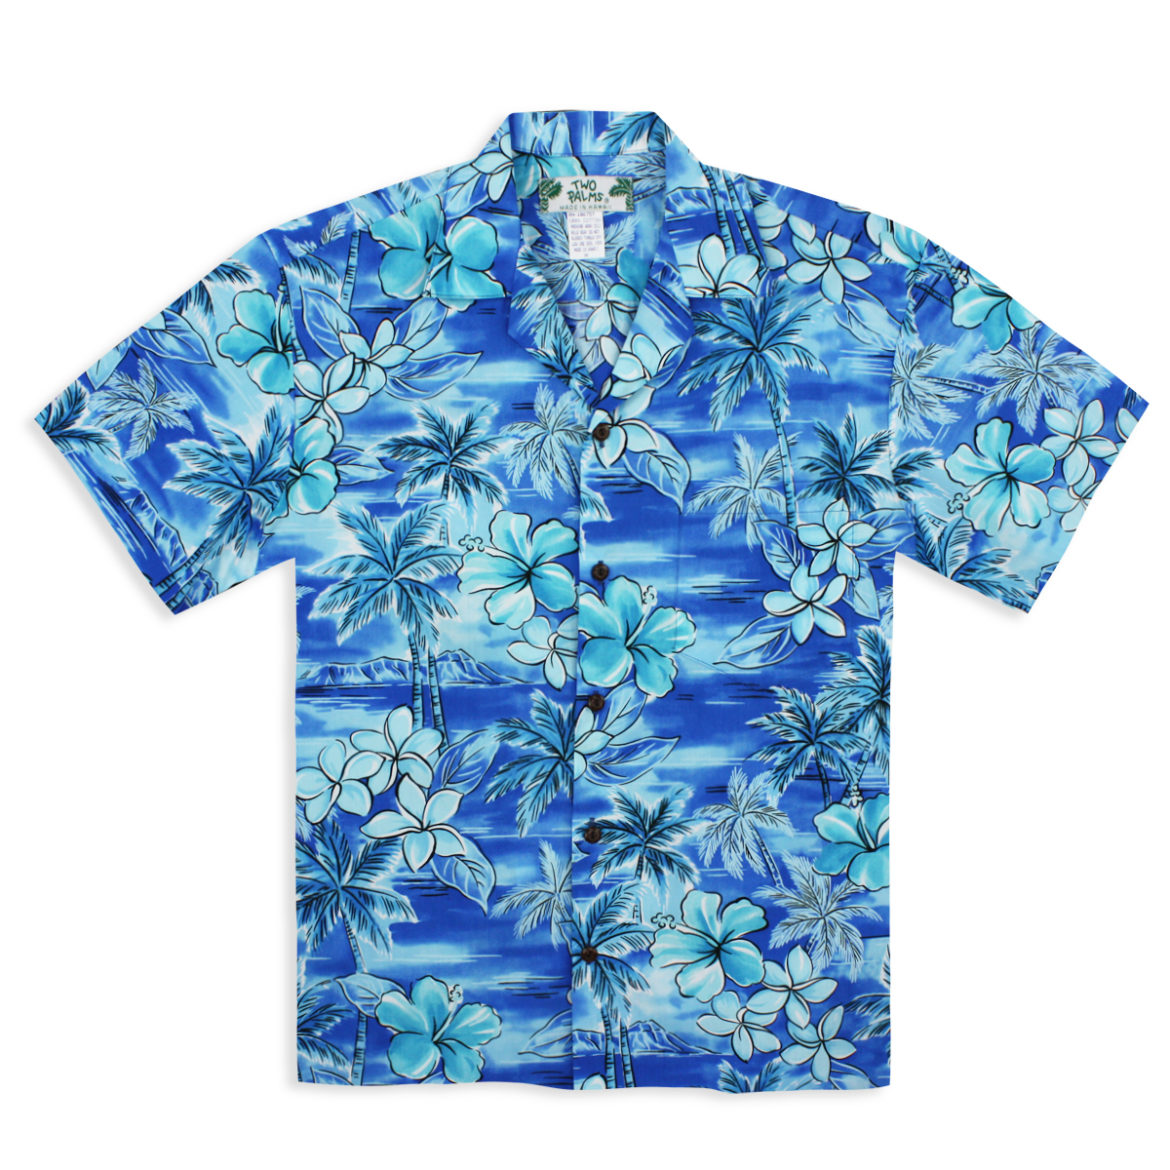 Men's Tropical Shirts and Hawaiian Aloha Shirts | Tropaholic.com